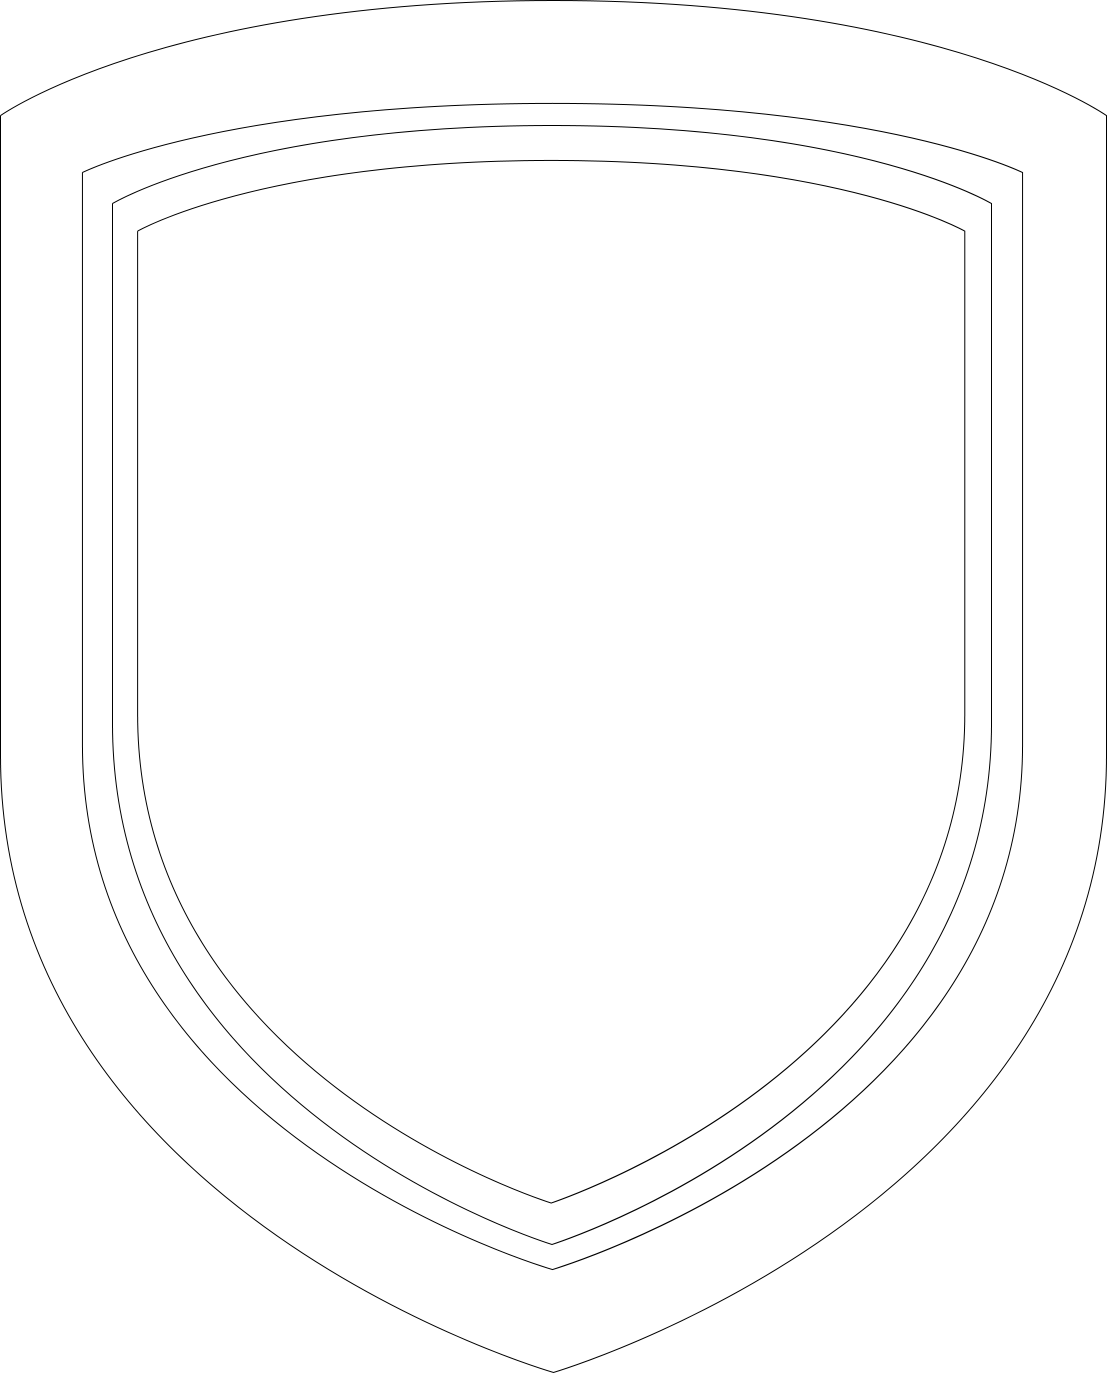 Trust My Garage logo